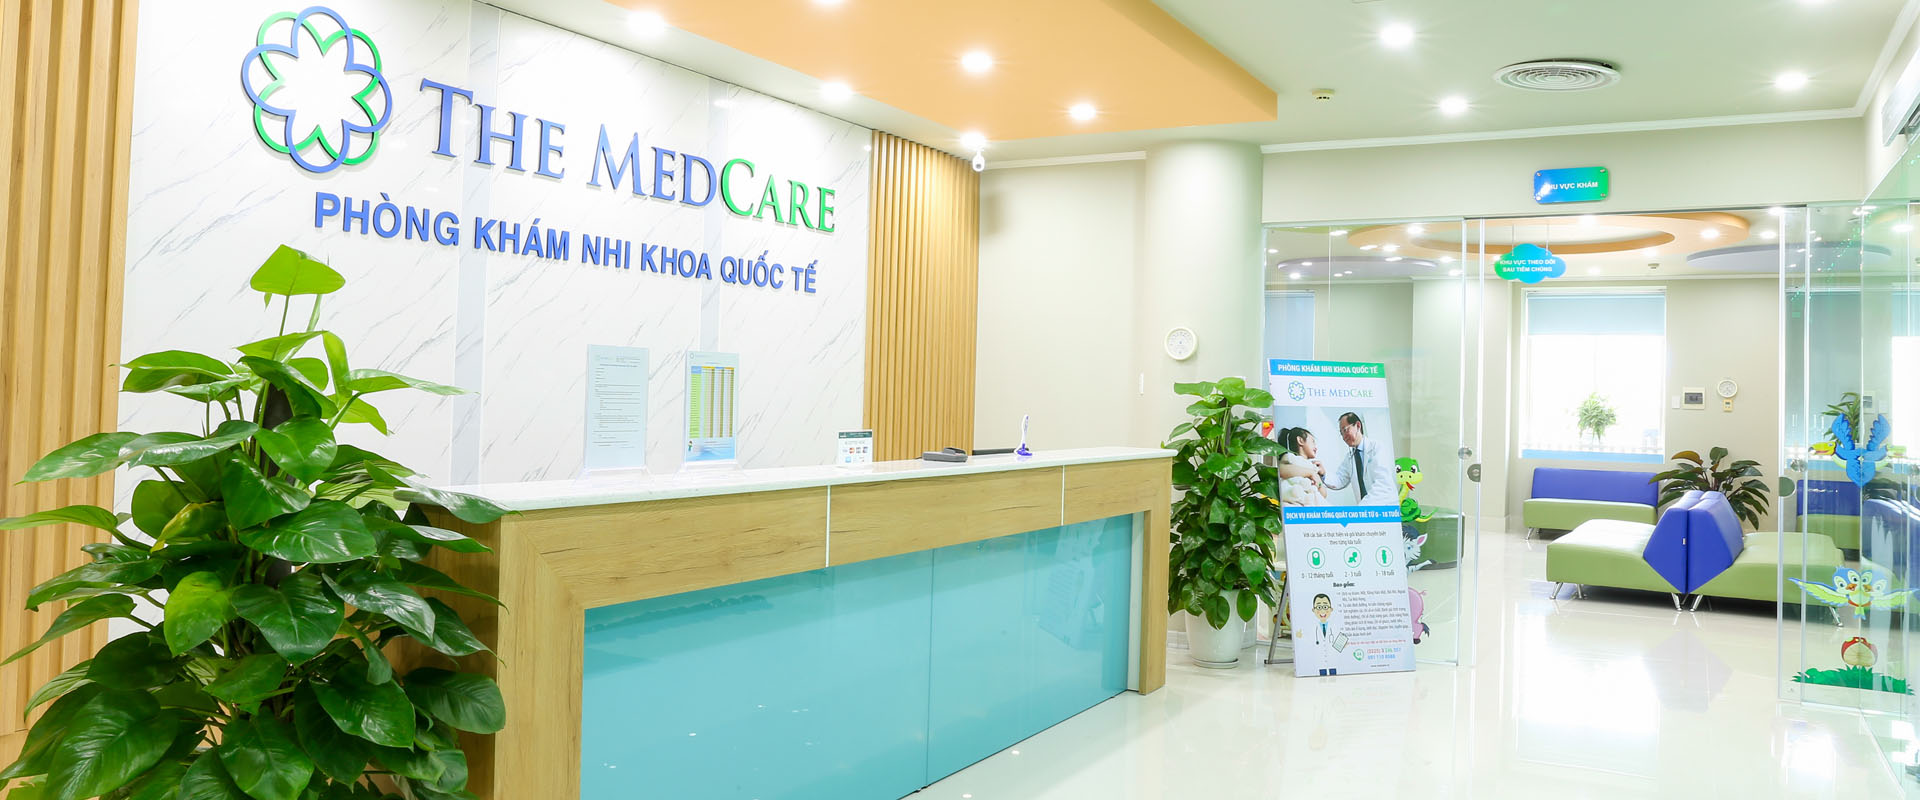 Phòng khám Nhi khoa Quốc tế The Medcare